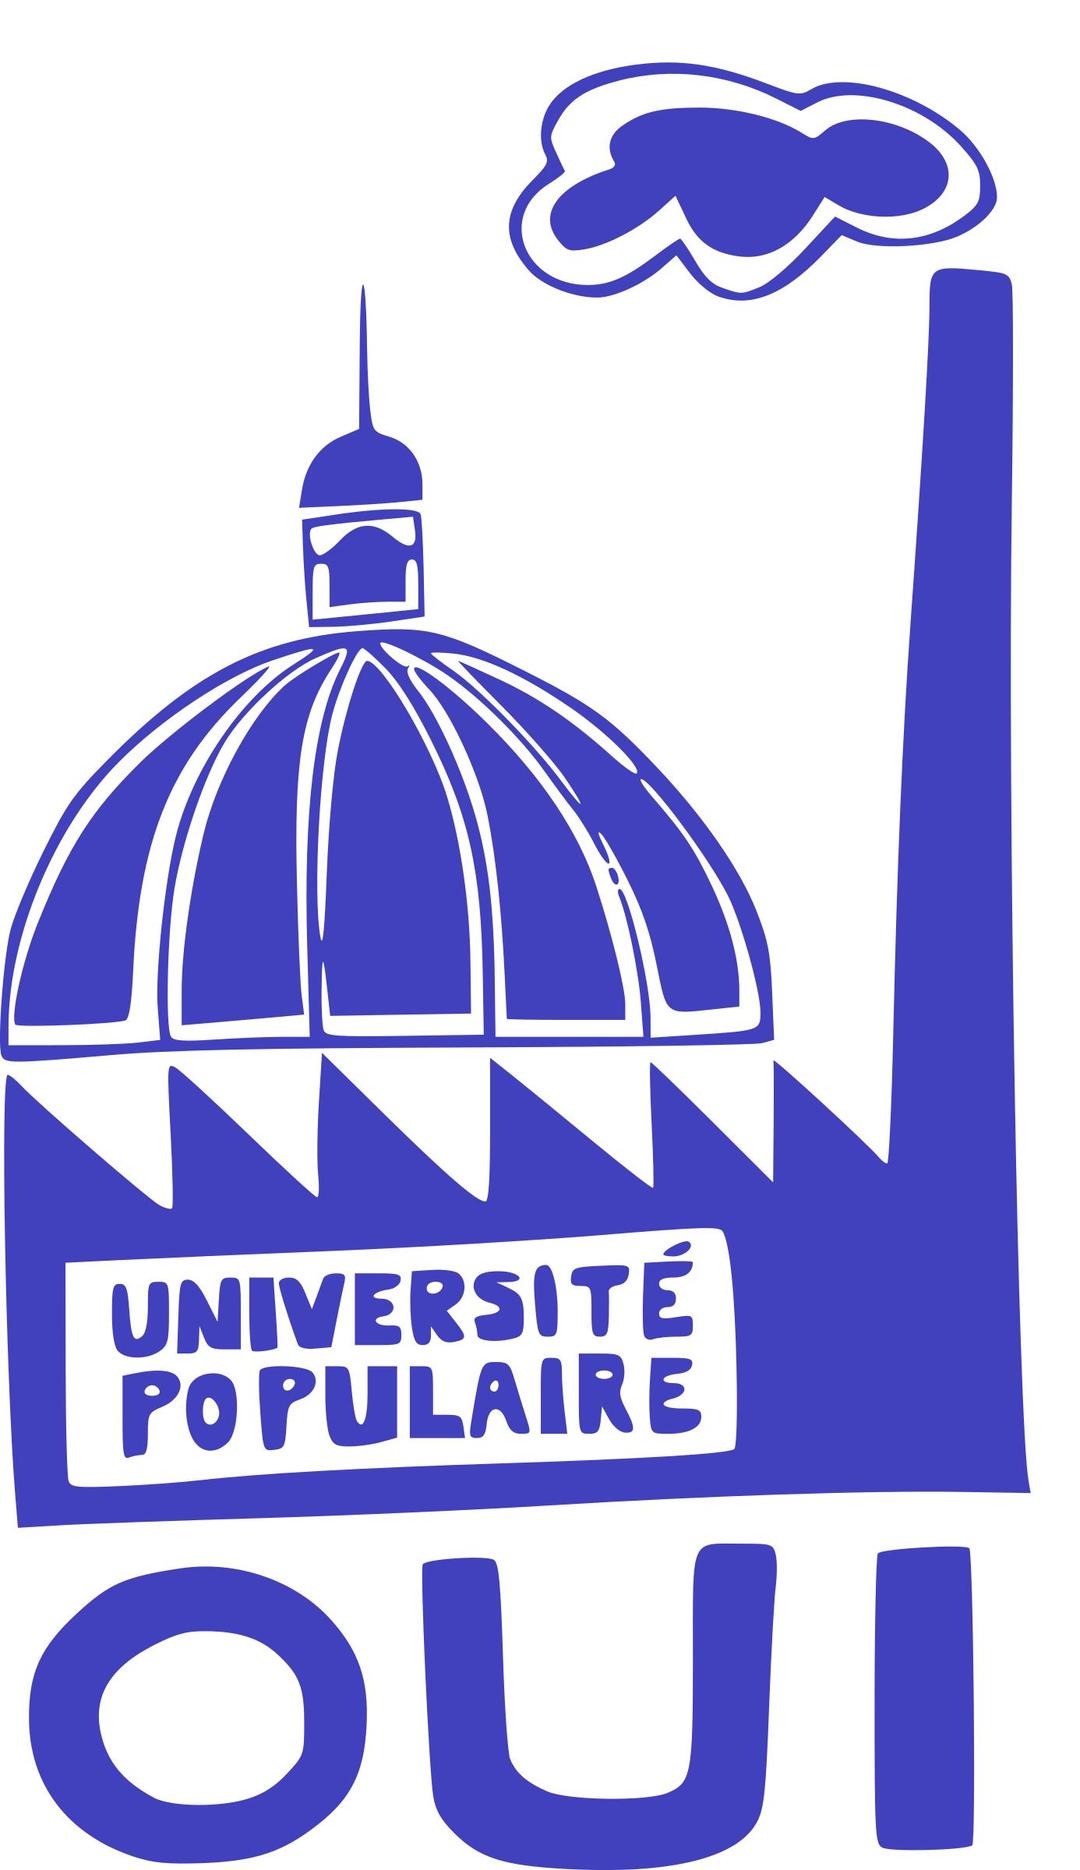 Université populaire png transparent